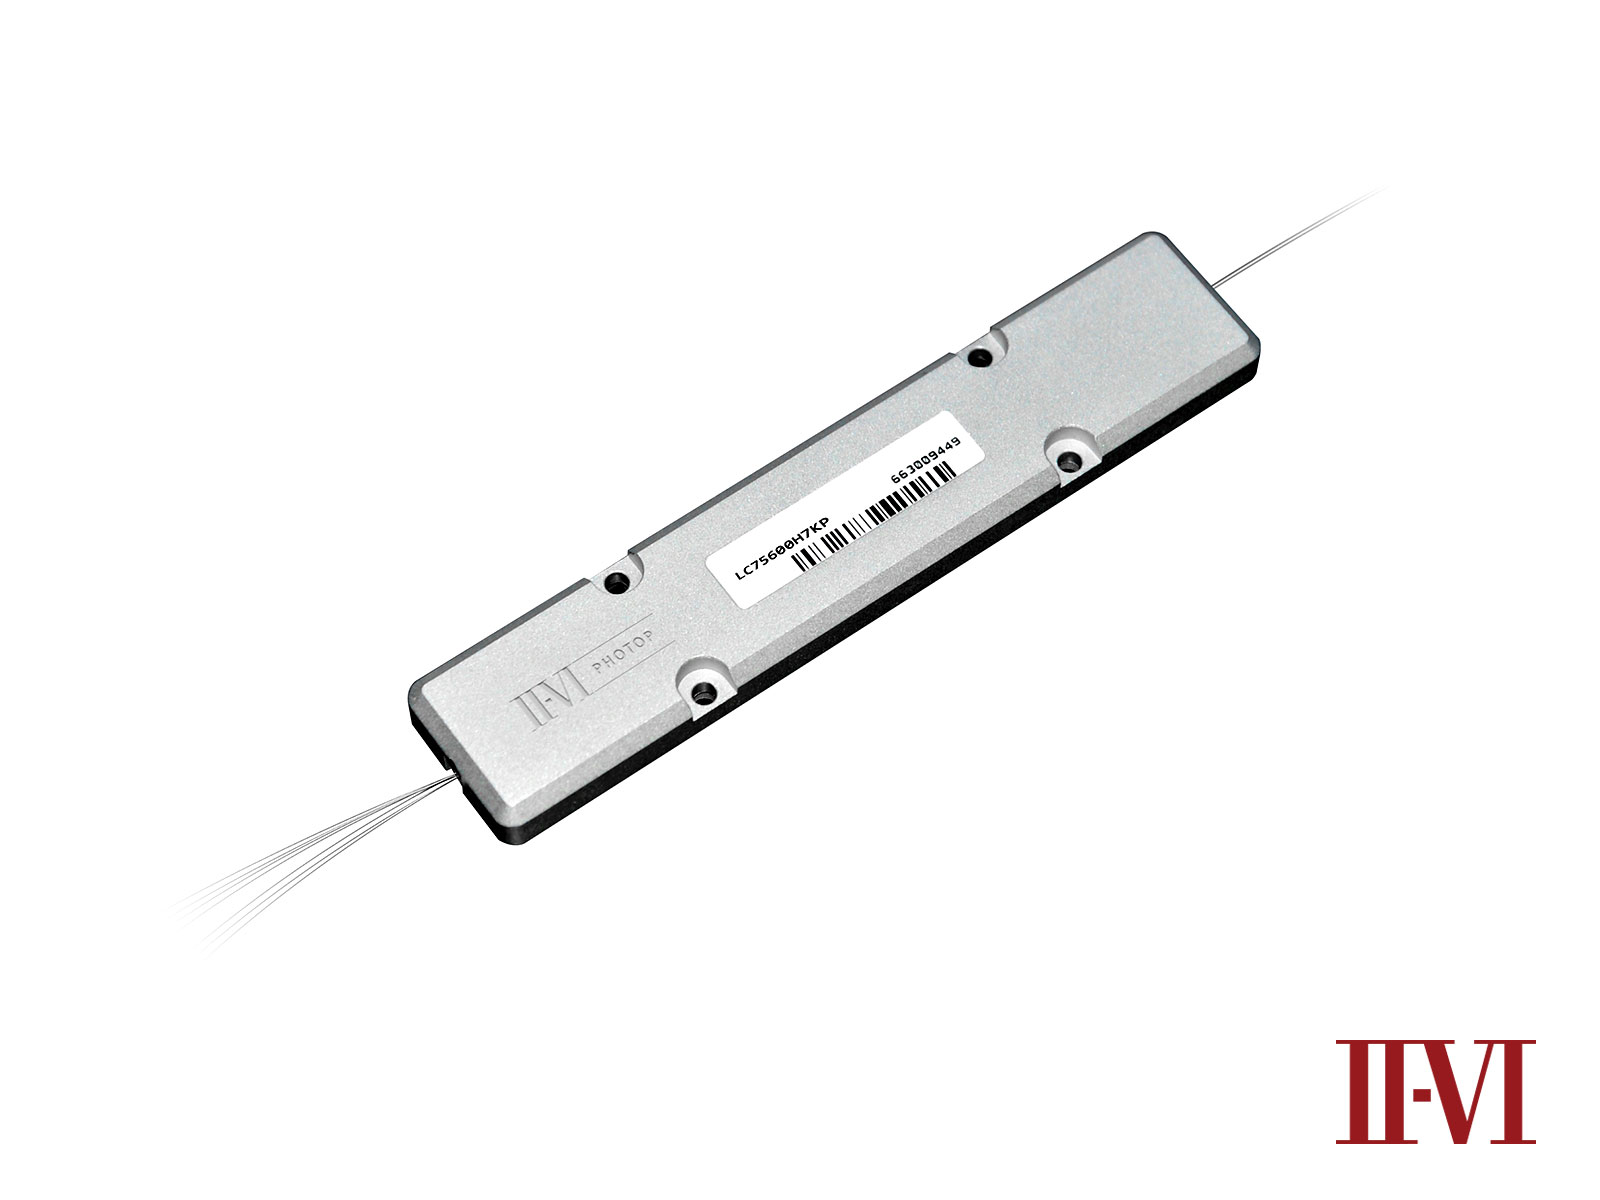 II-VI Incorporated Unveils 10 kW Fiber Laser Combiners